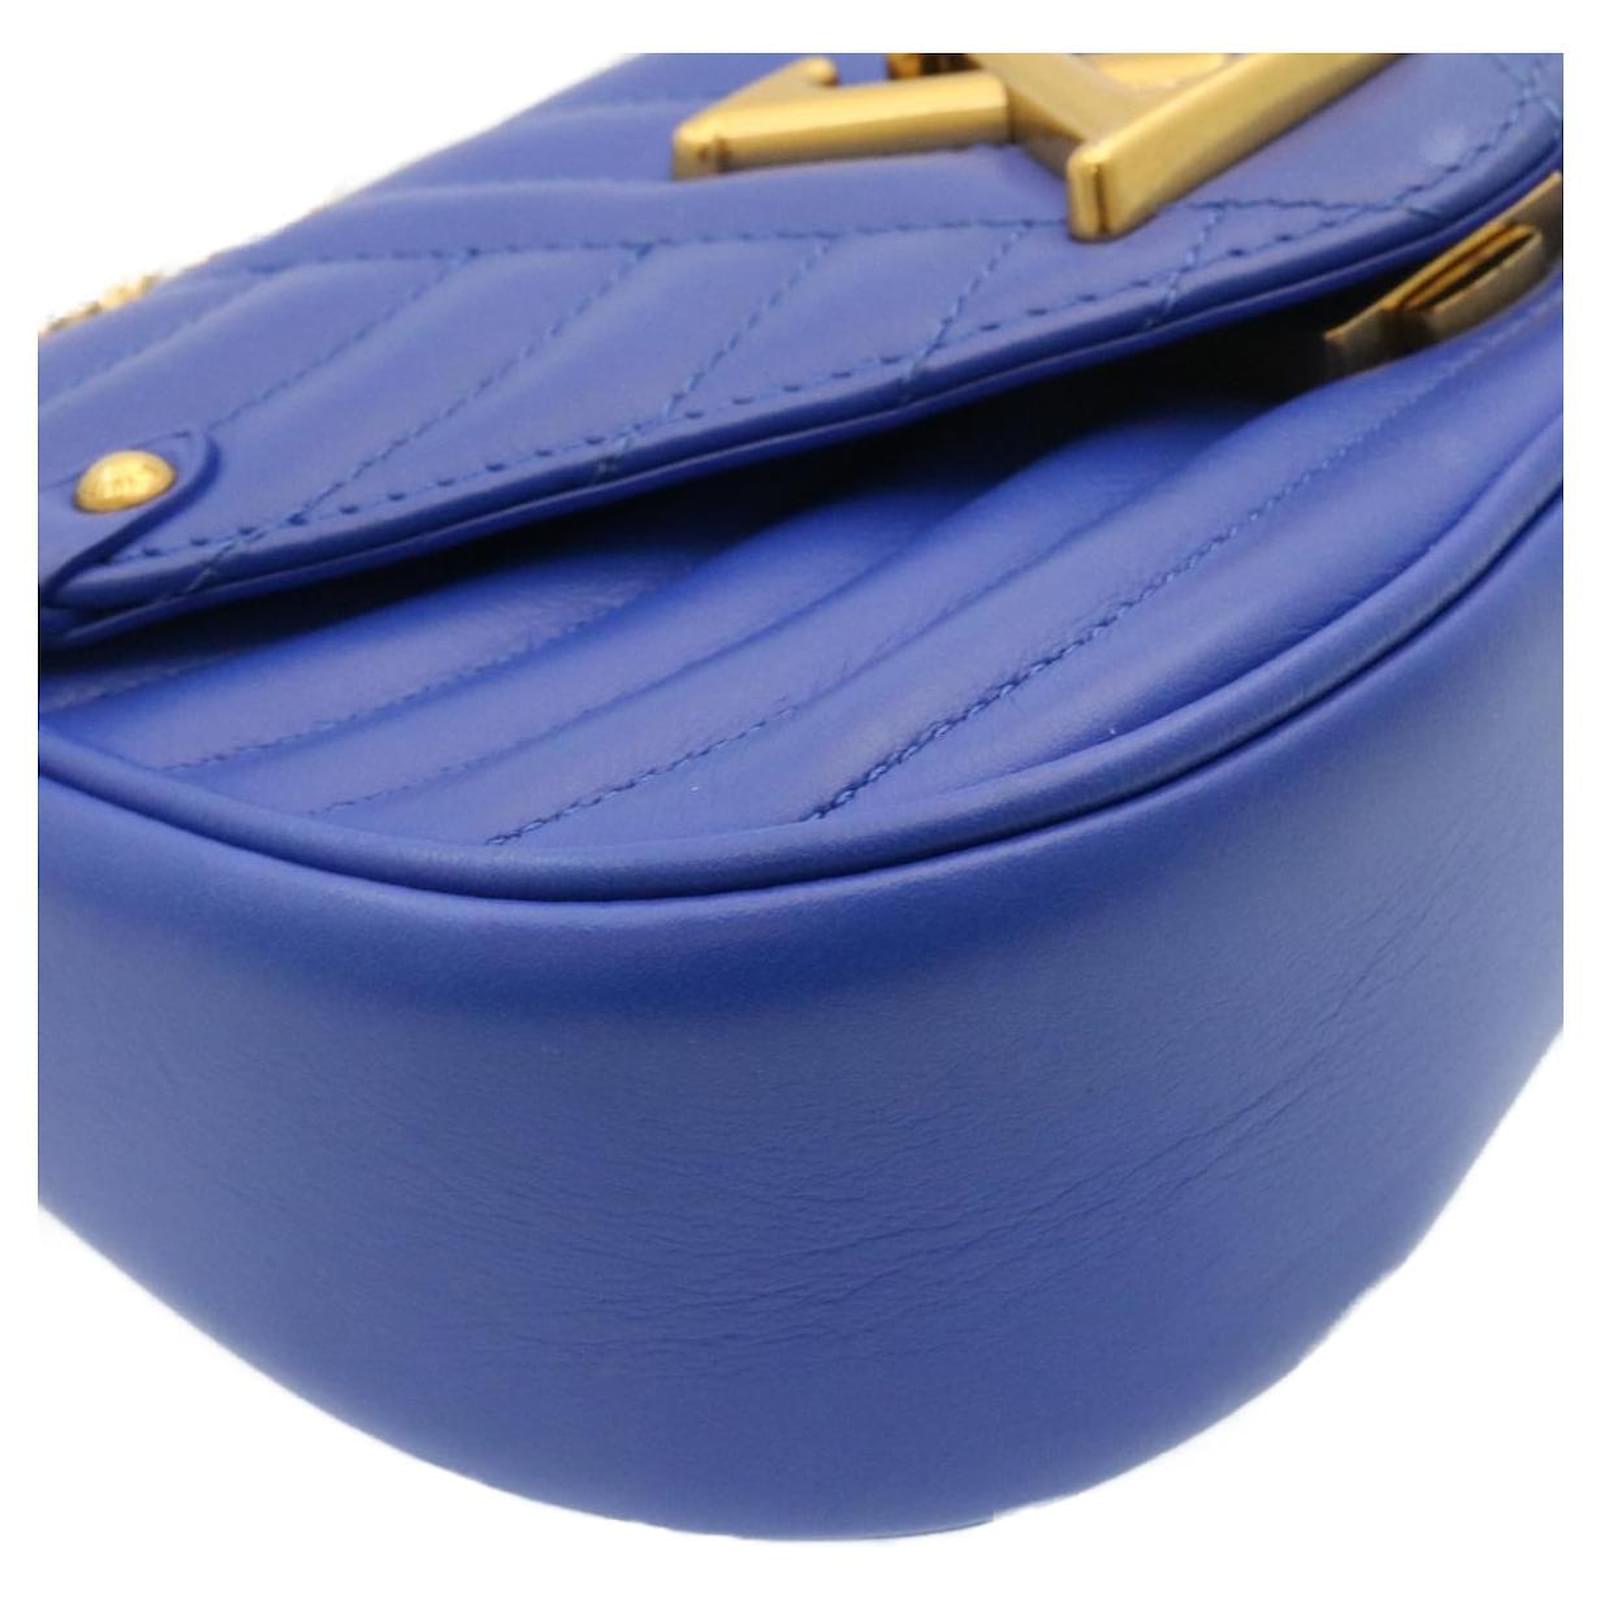 LOUIS VUITTON New Wave Chain Bag PM 2Way Shoulder Bag Blue M55020